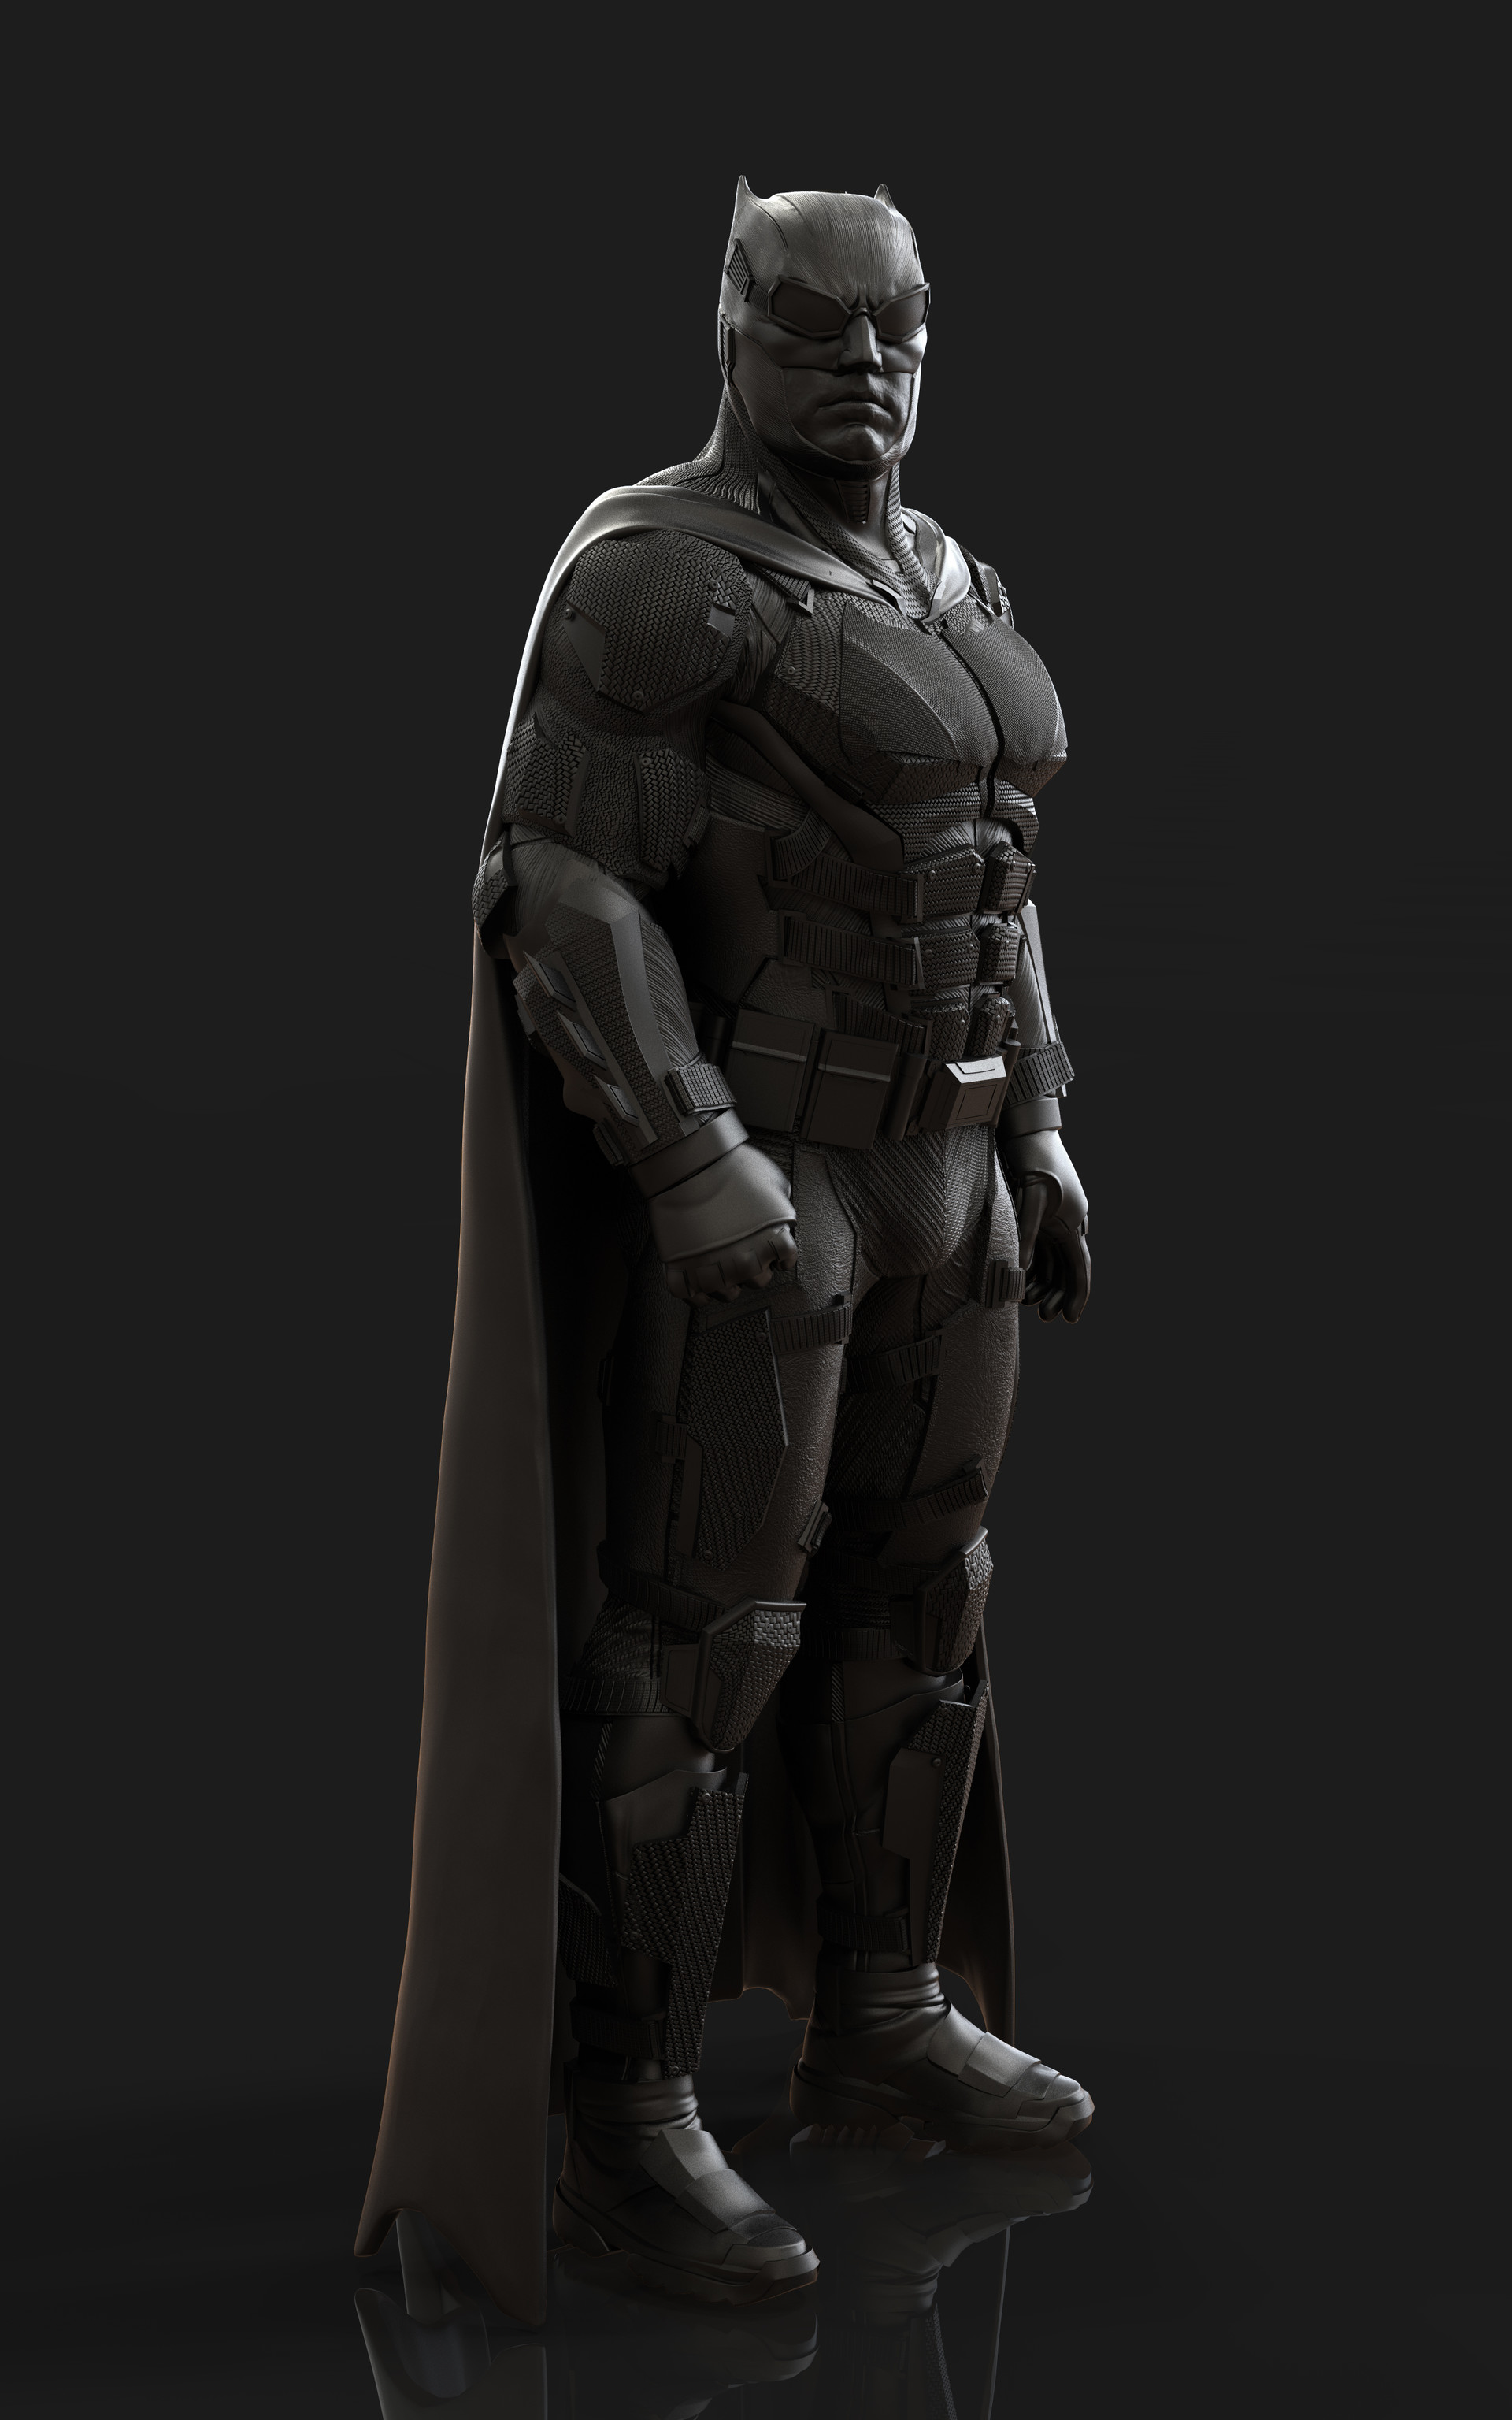 ArtStation - Batman Tactical Suit (Justice League)